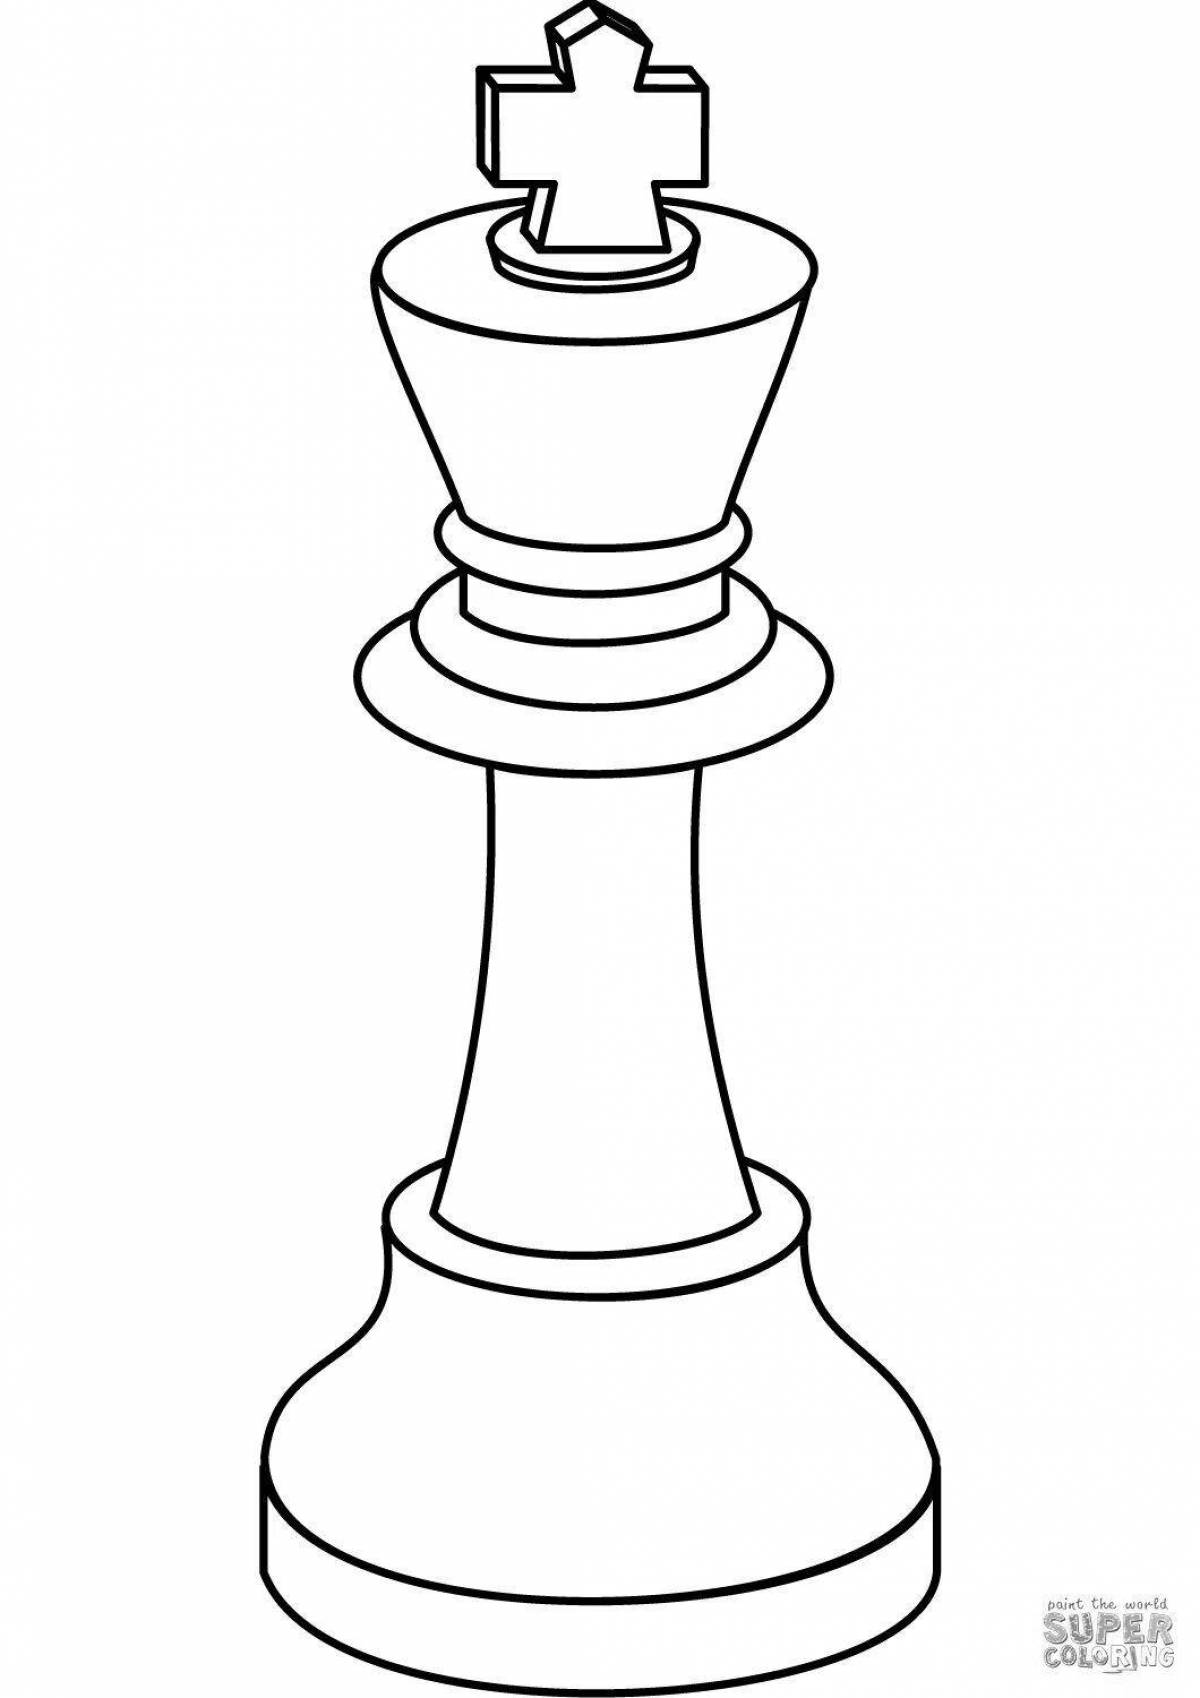 Chess queen #6